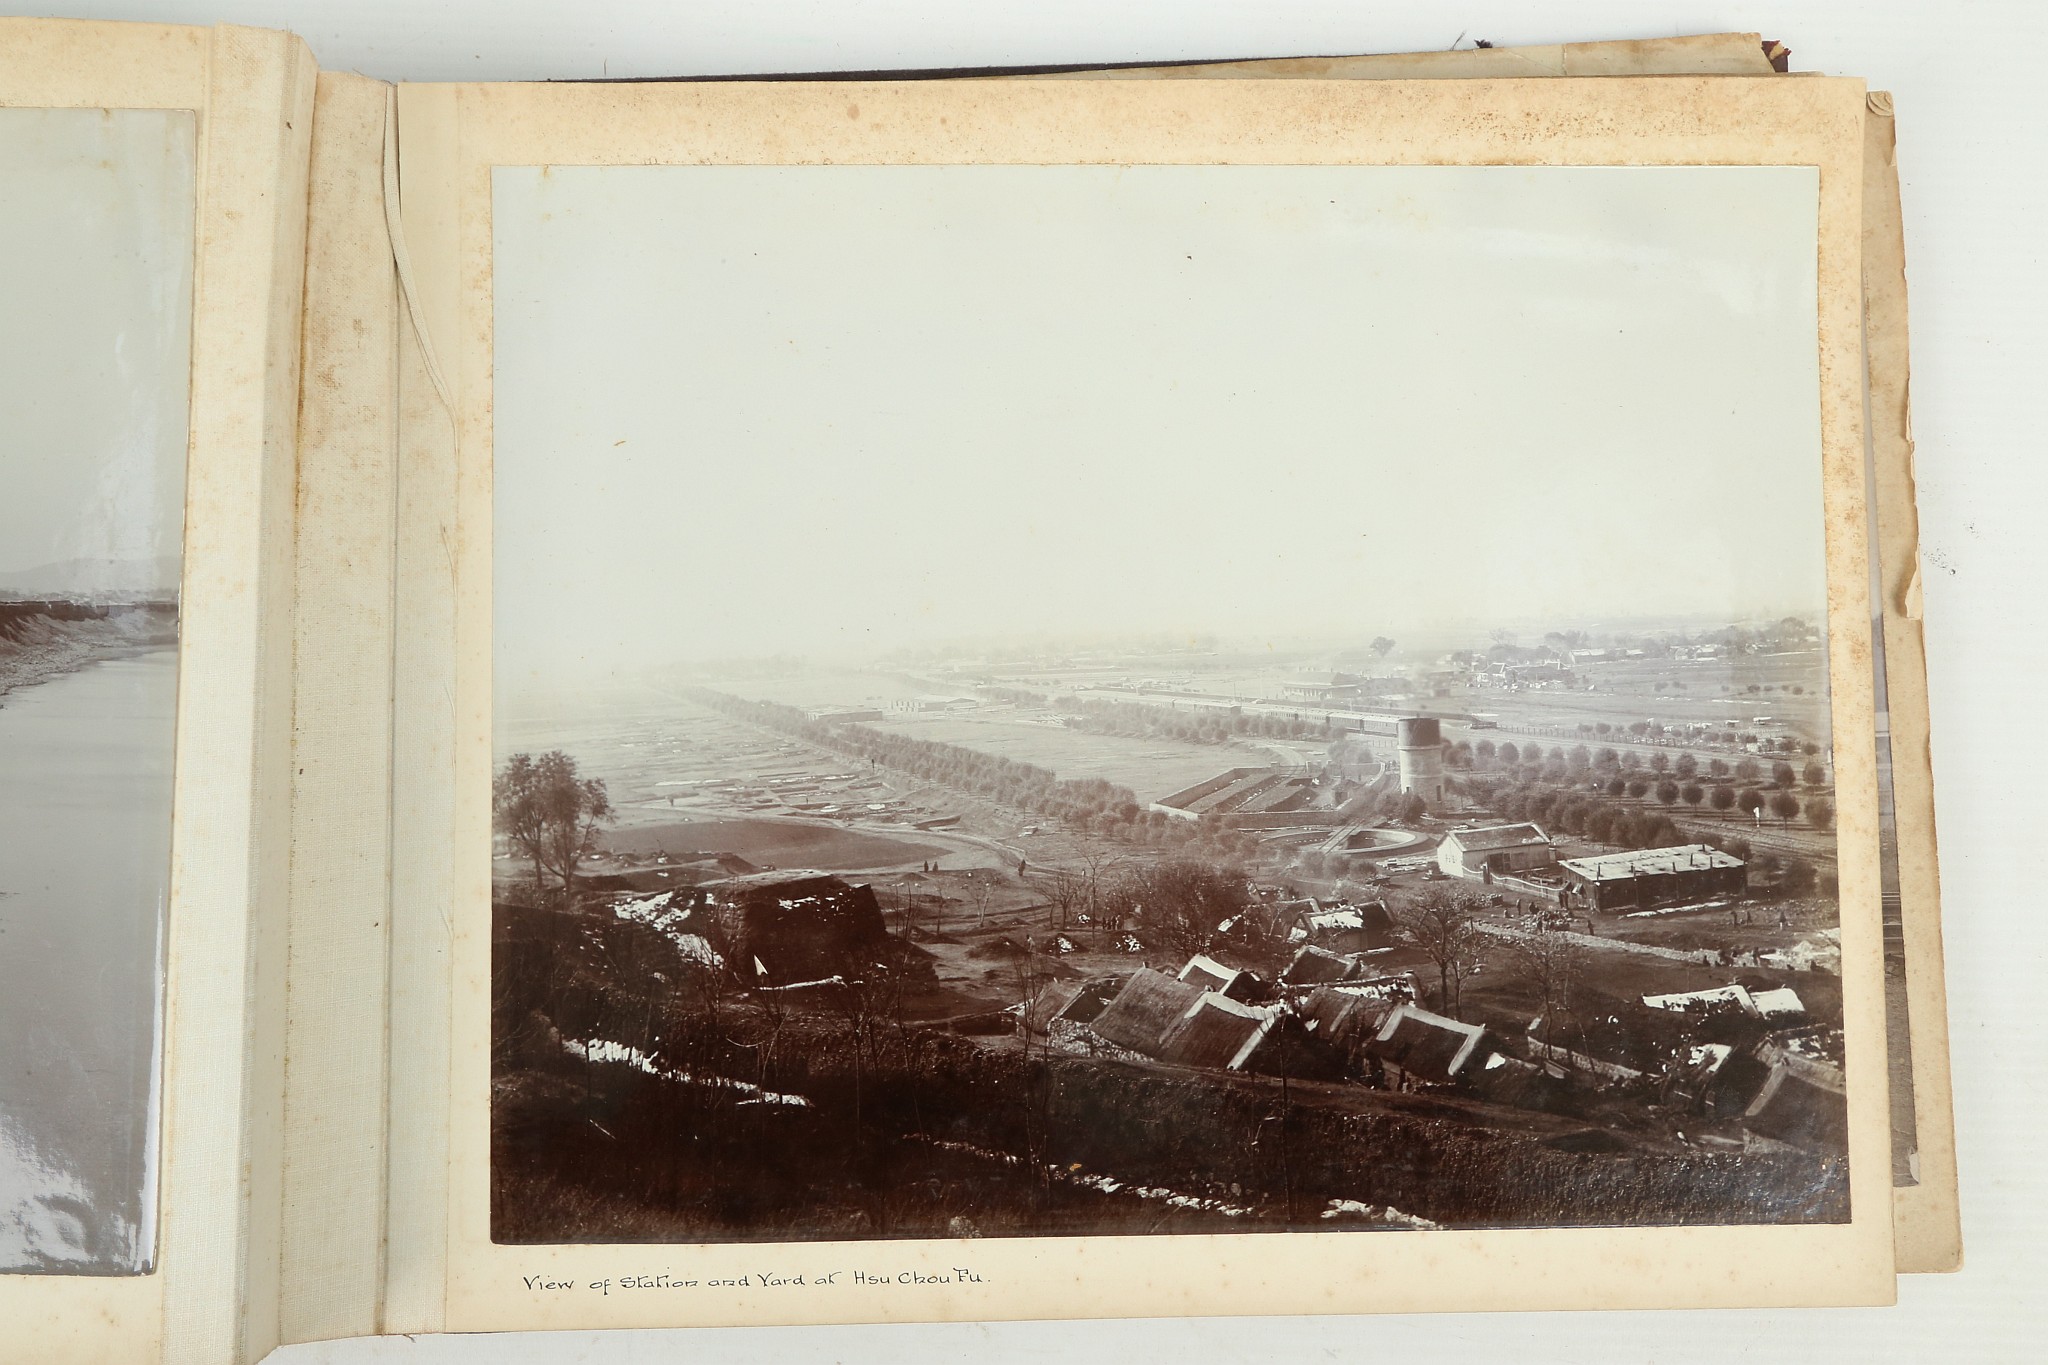 A PHOTOGRAPHIC ALBUM OF THE TIENTSIN-PUKOW RAILWAY - Image 39 of 60